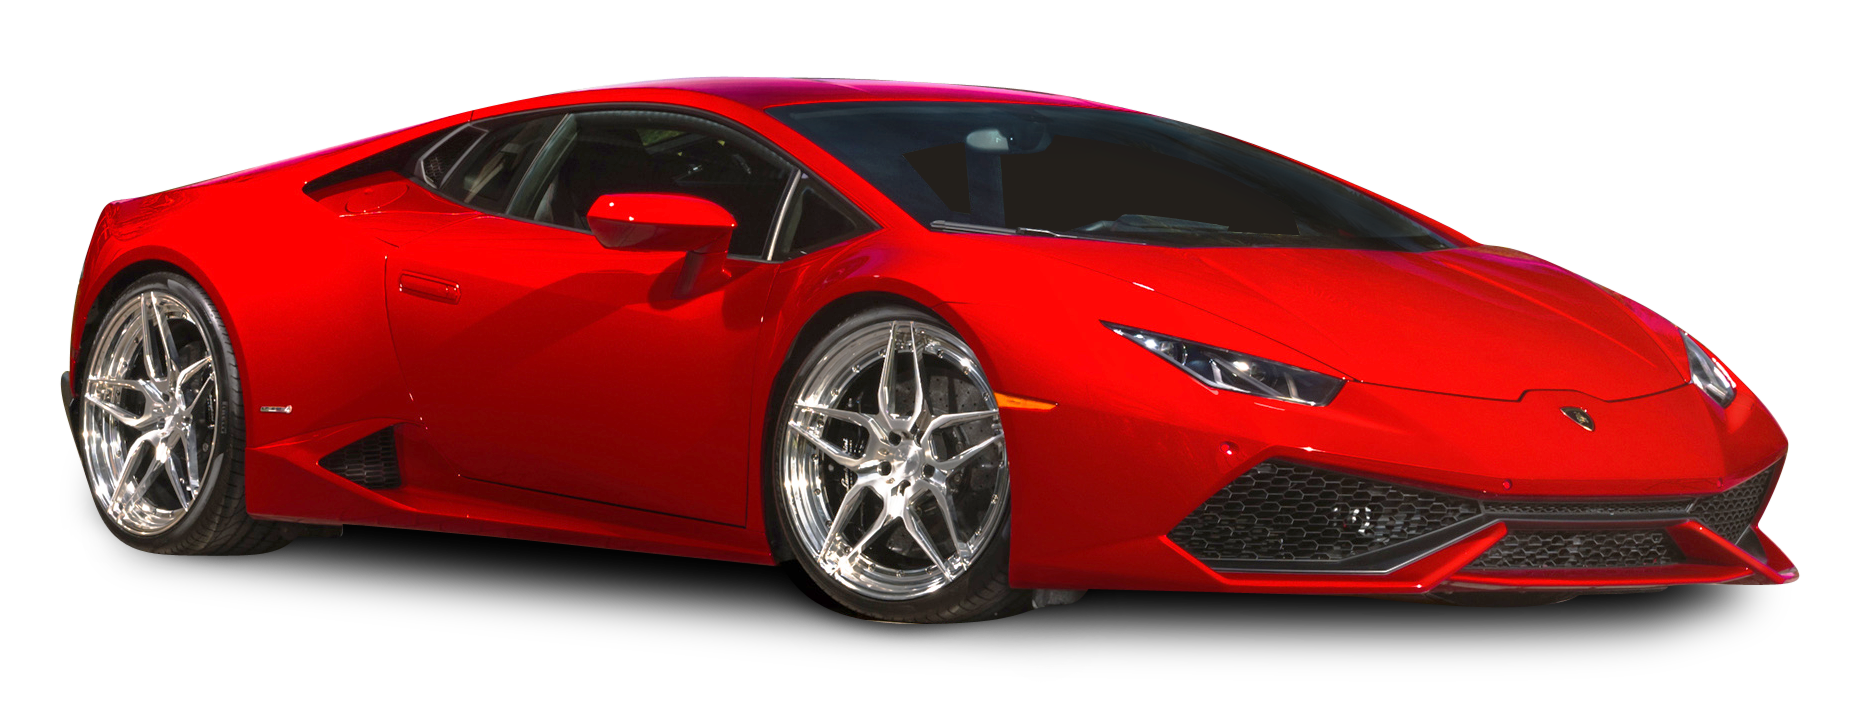 Imagen Red Lamborghini PNGn de alta calidad